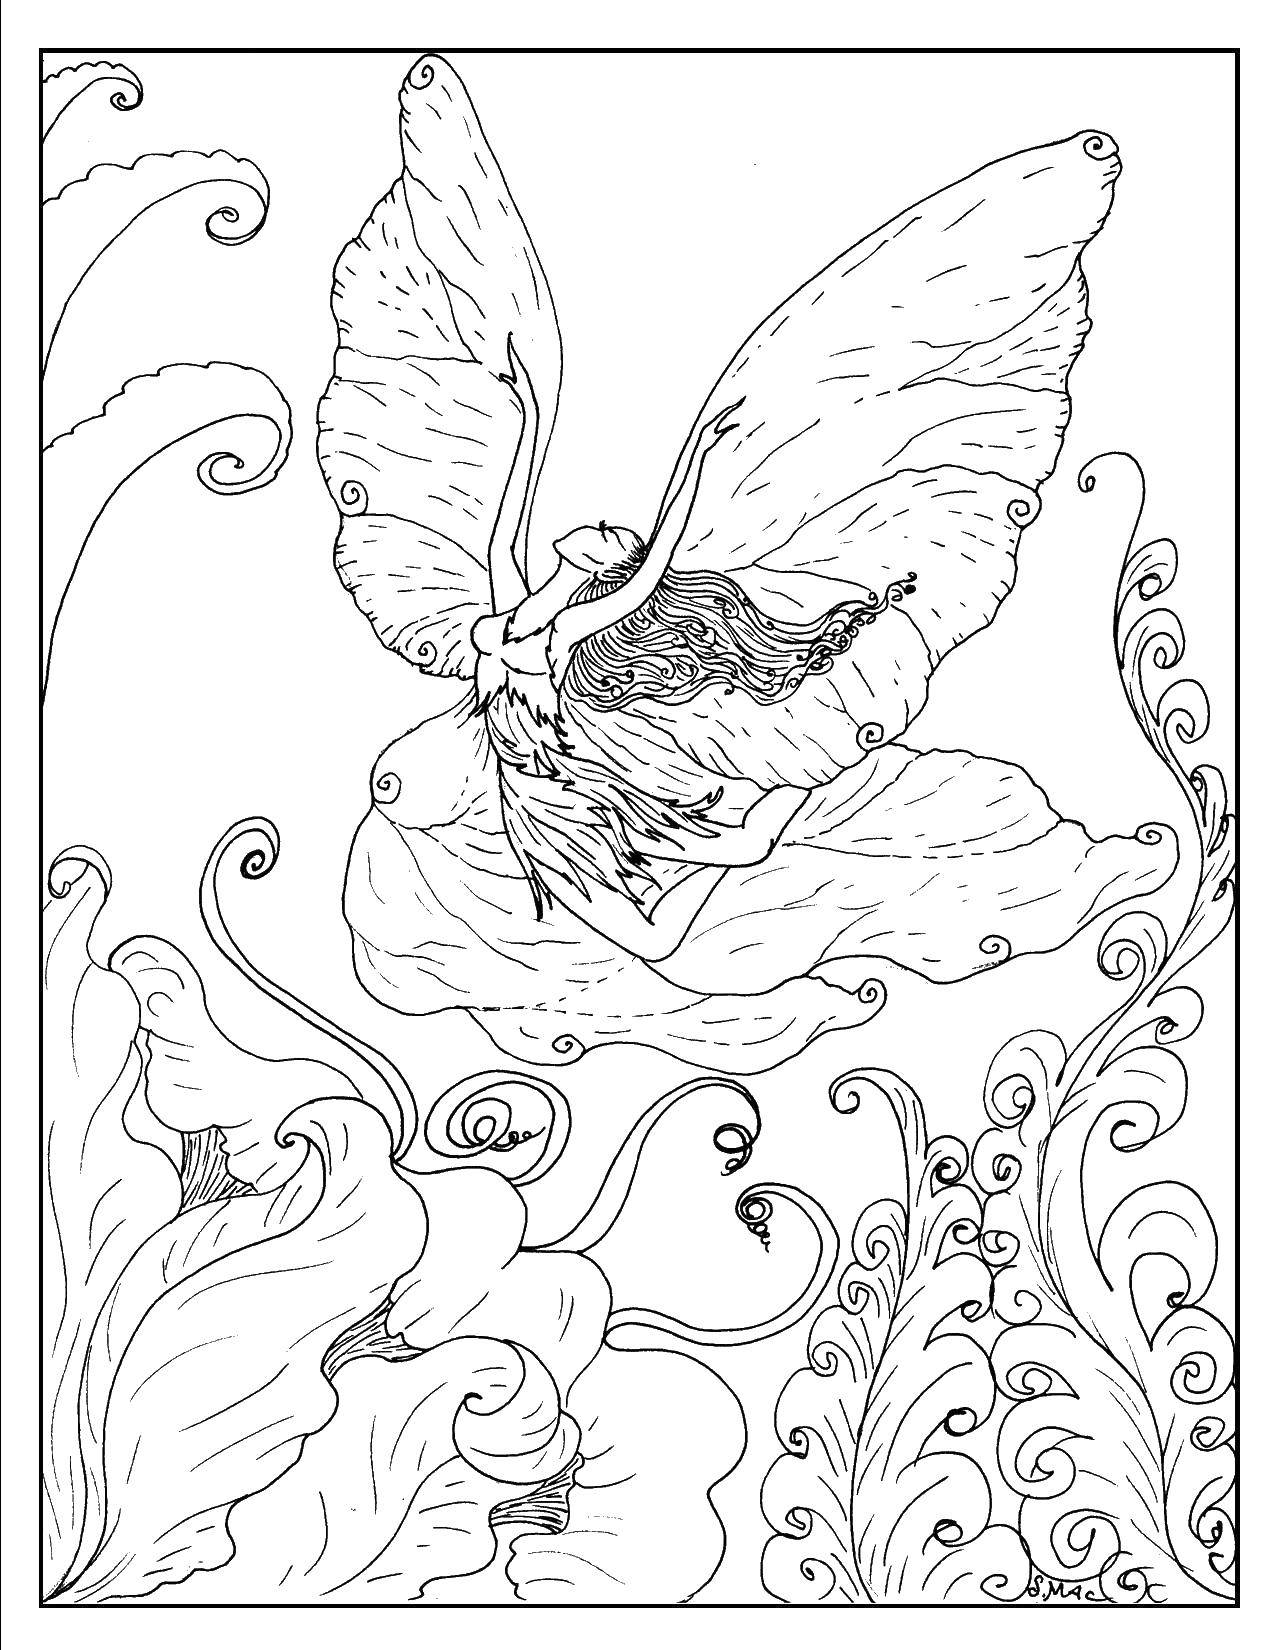 Раскраска с изображением феи и ее крыльев (крылья, развлечение)